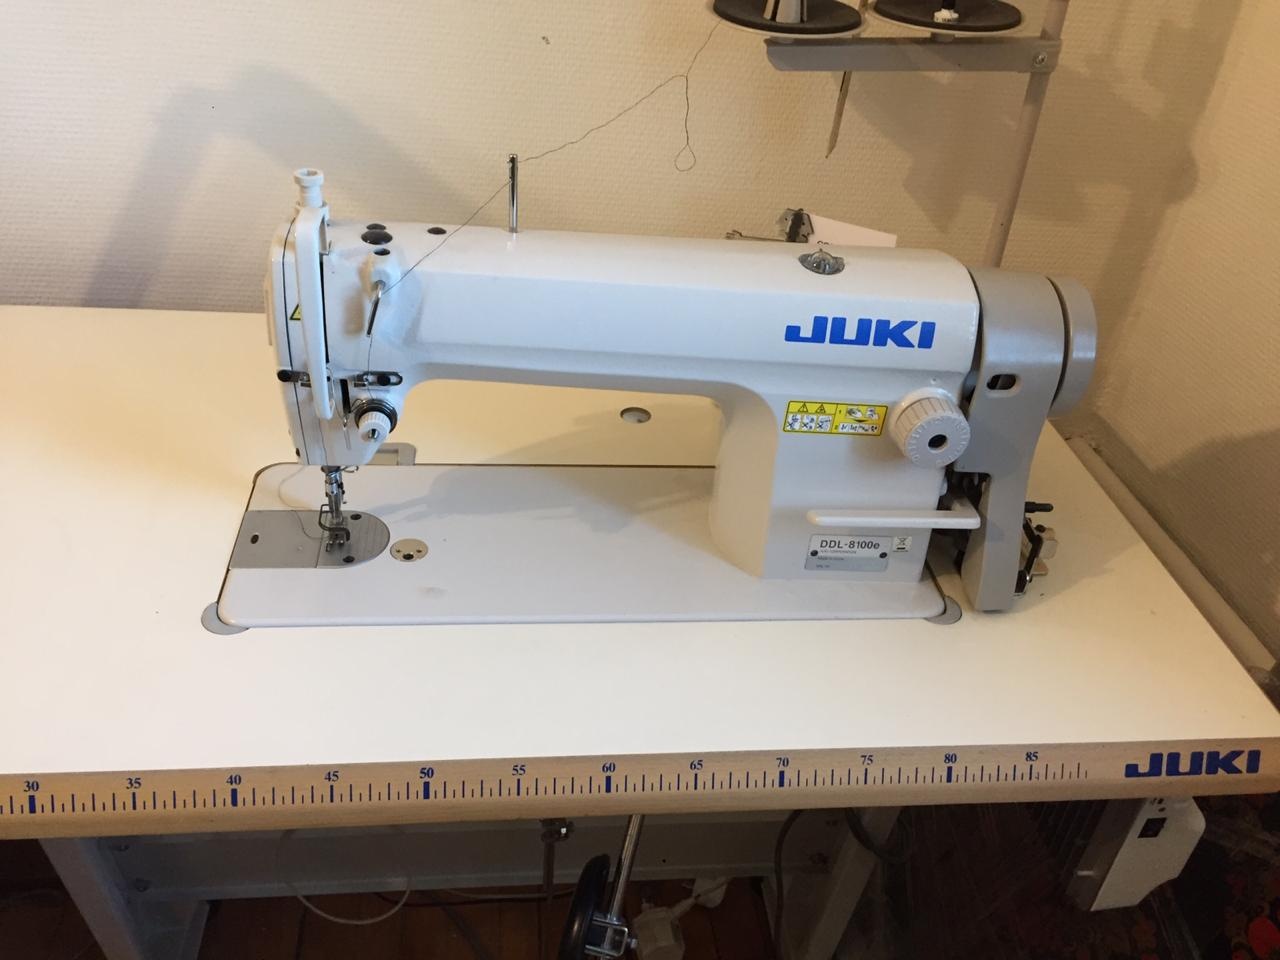 Машинка juki ddl. Швейная машина Juki DDL-8100e. Швейная машина Промышленная Juki DDL-8100e. Juki 8100 швейная машина. Швейная машинка Juki 8100 e со столом.